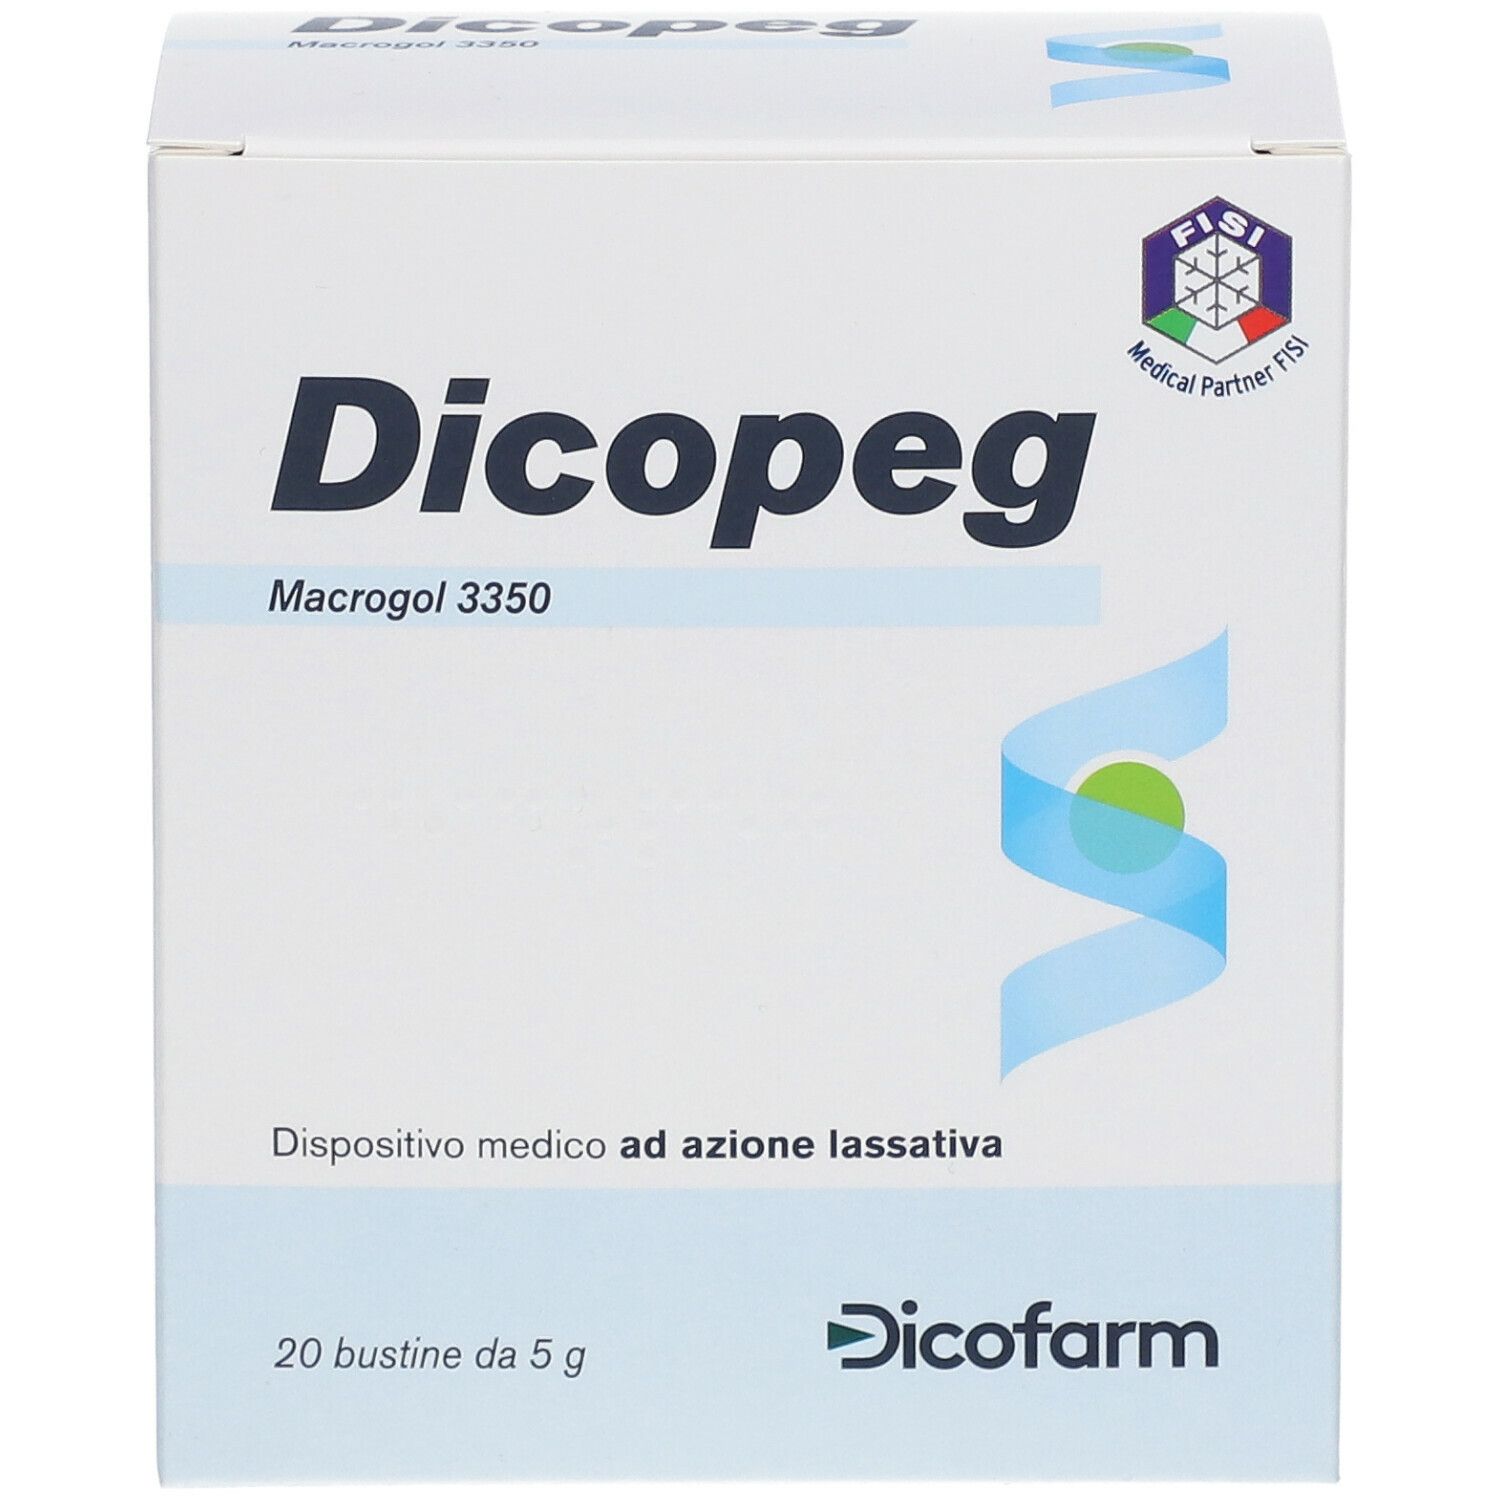 Dicopeg Macrogol 3350